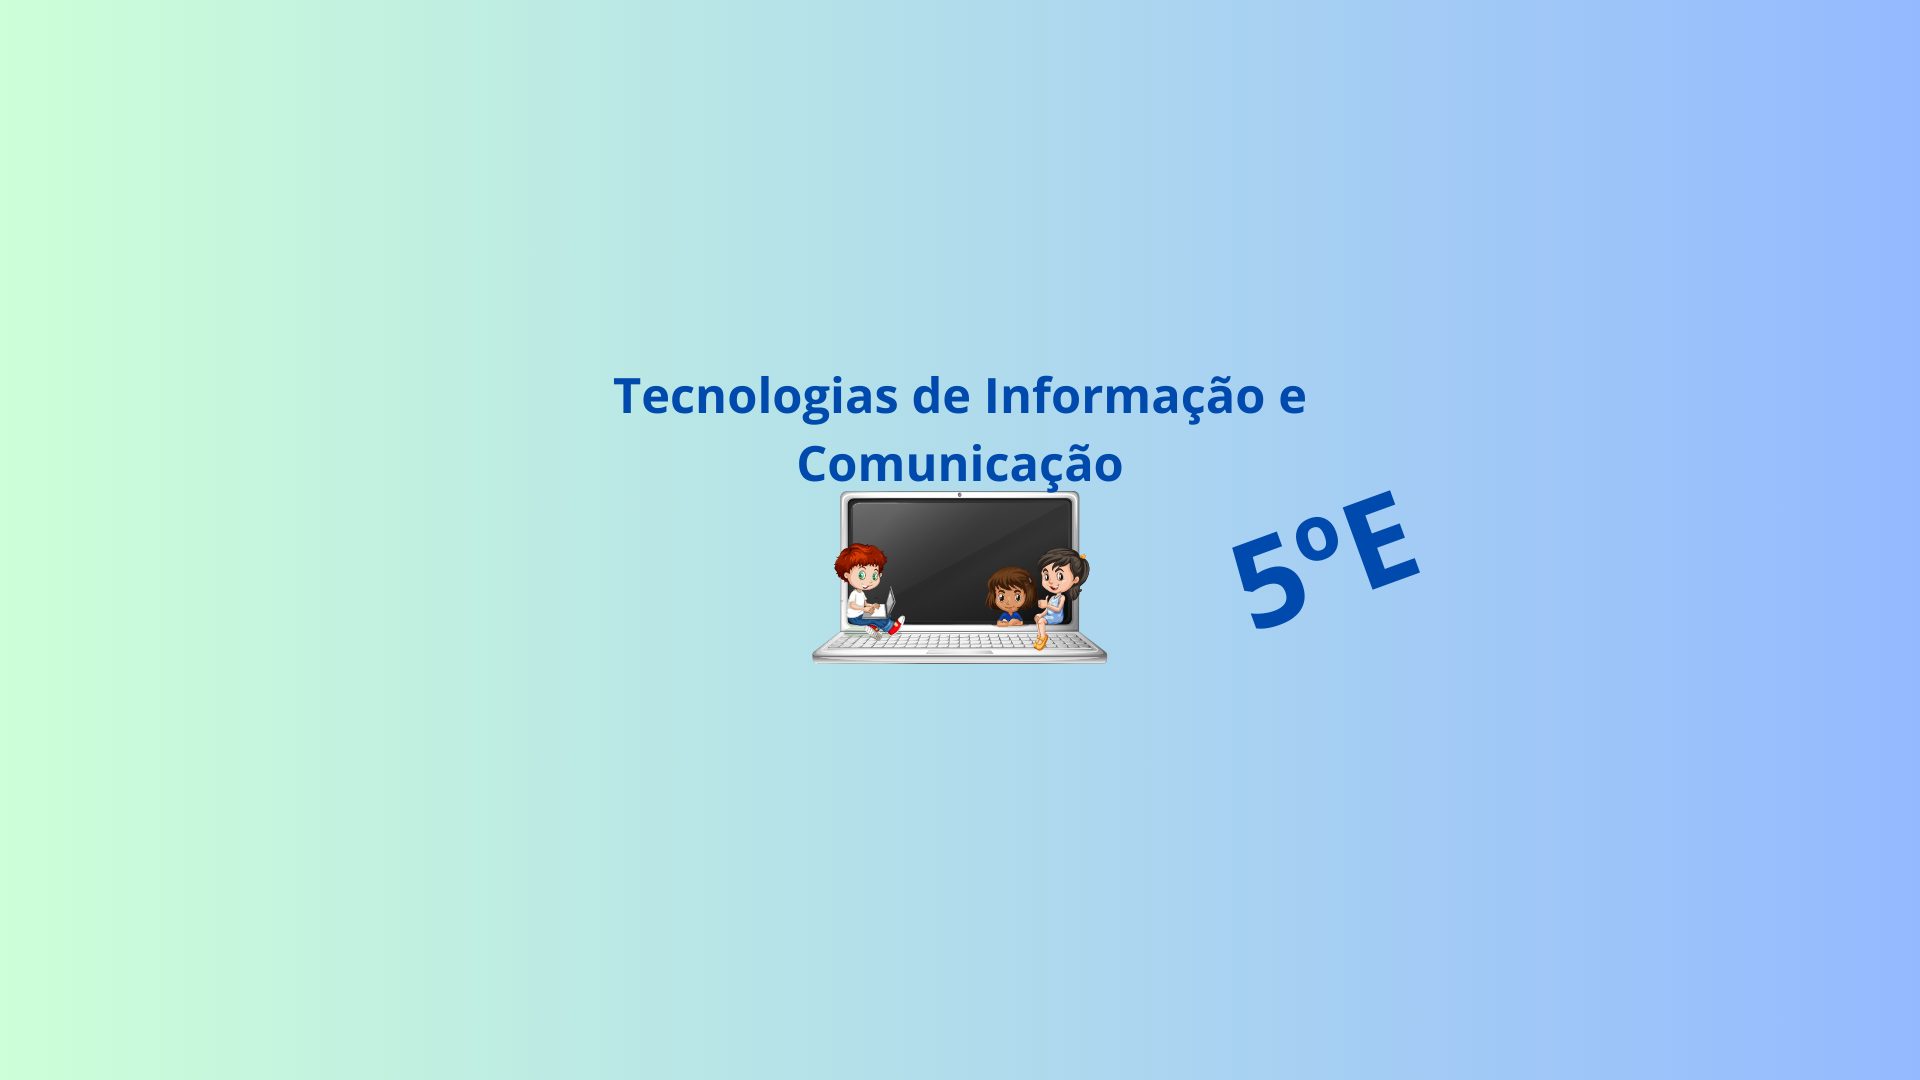 5E - Tecnologias de Informação e Comunicação